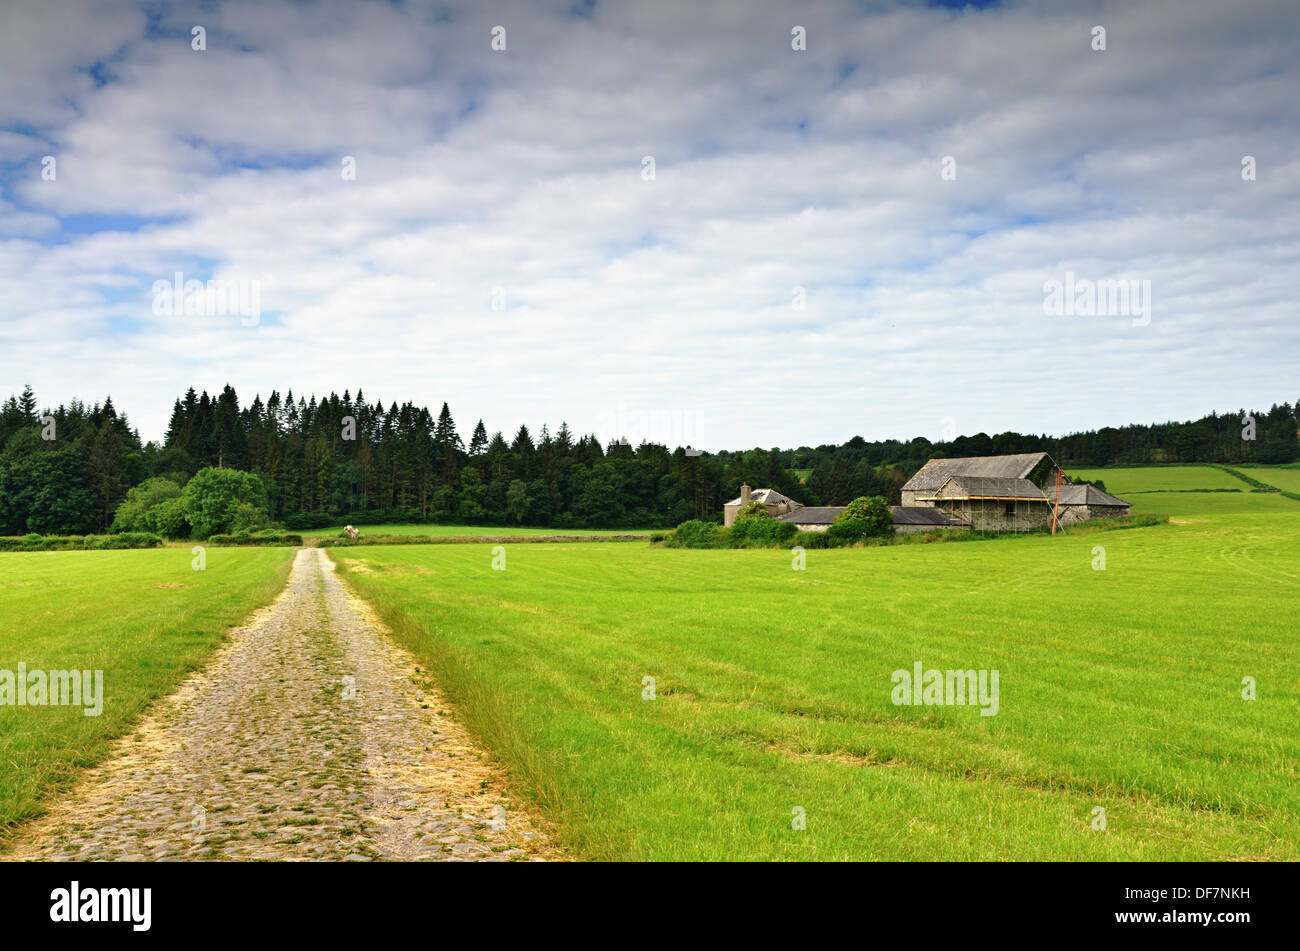 Wirtschaftsgebäude und eine Strecke laufen durch Felder in Baden-Baden, einem Dorf in Cumbria, England Stockfoto